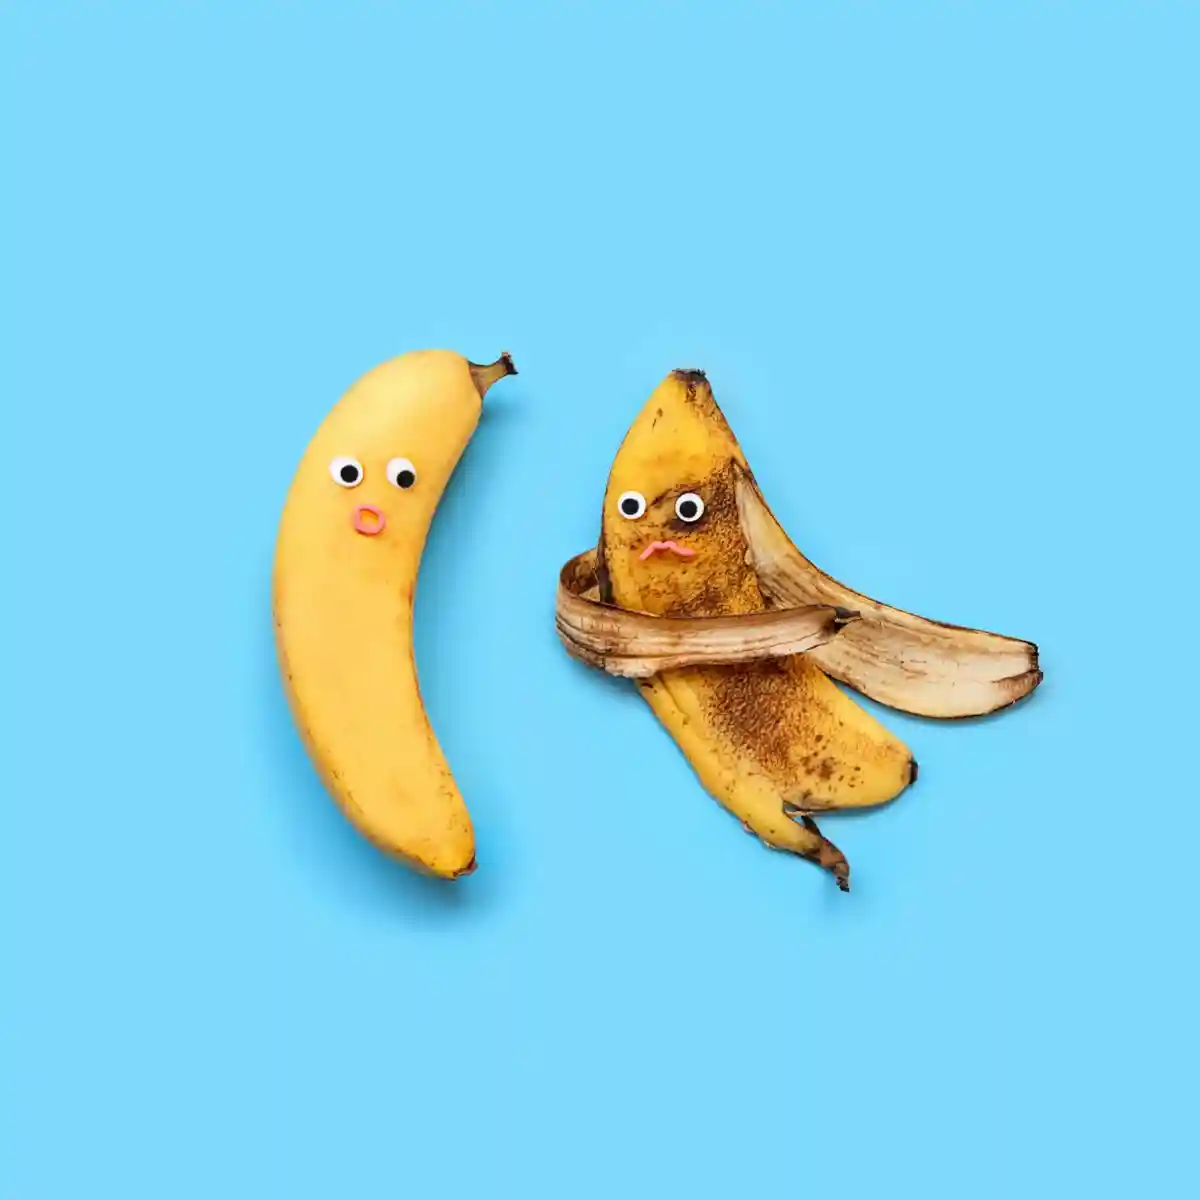 почему не стоит выбрасывать кожуру банана Фото: ju_see/shutterstock.com